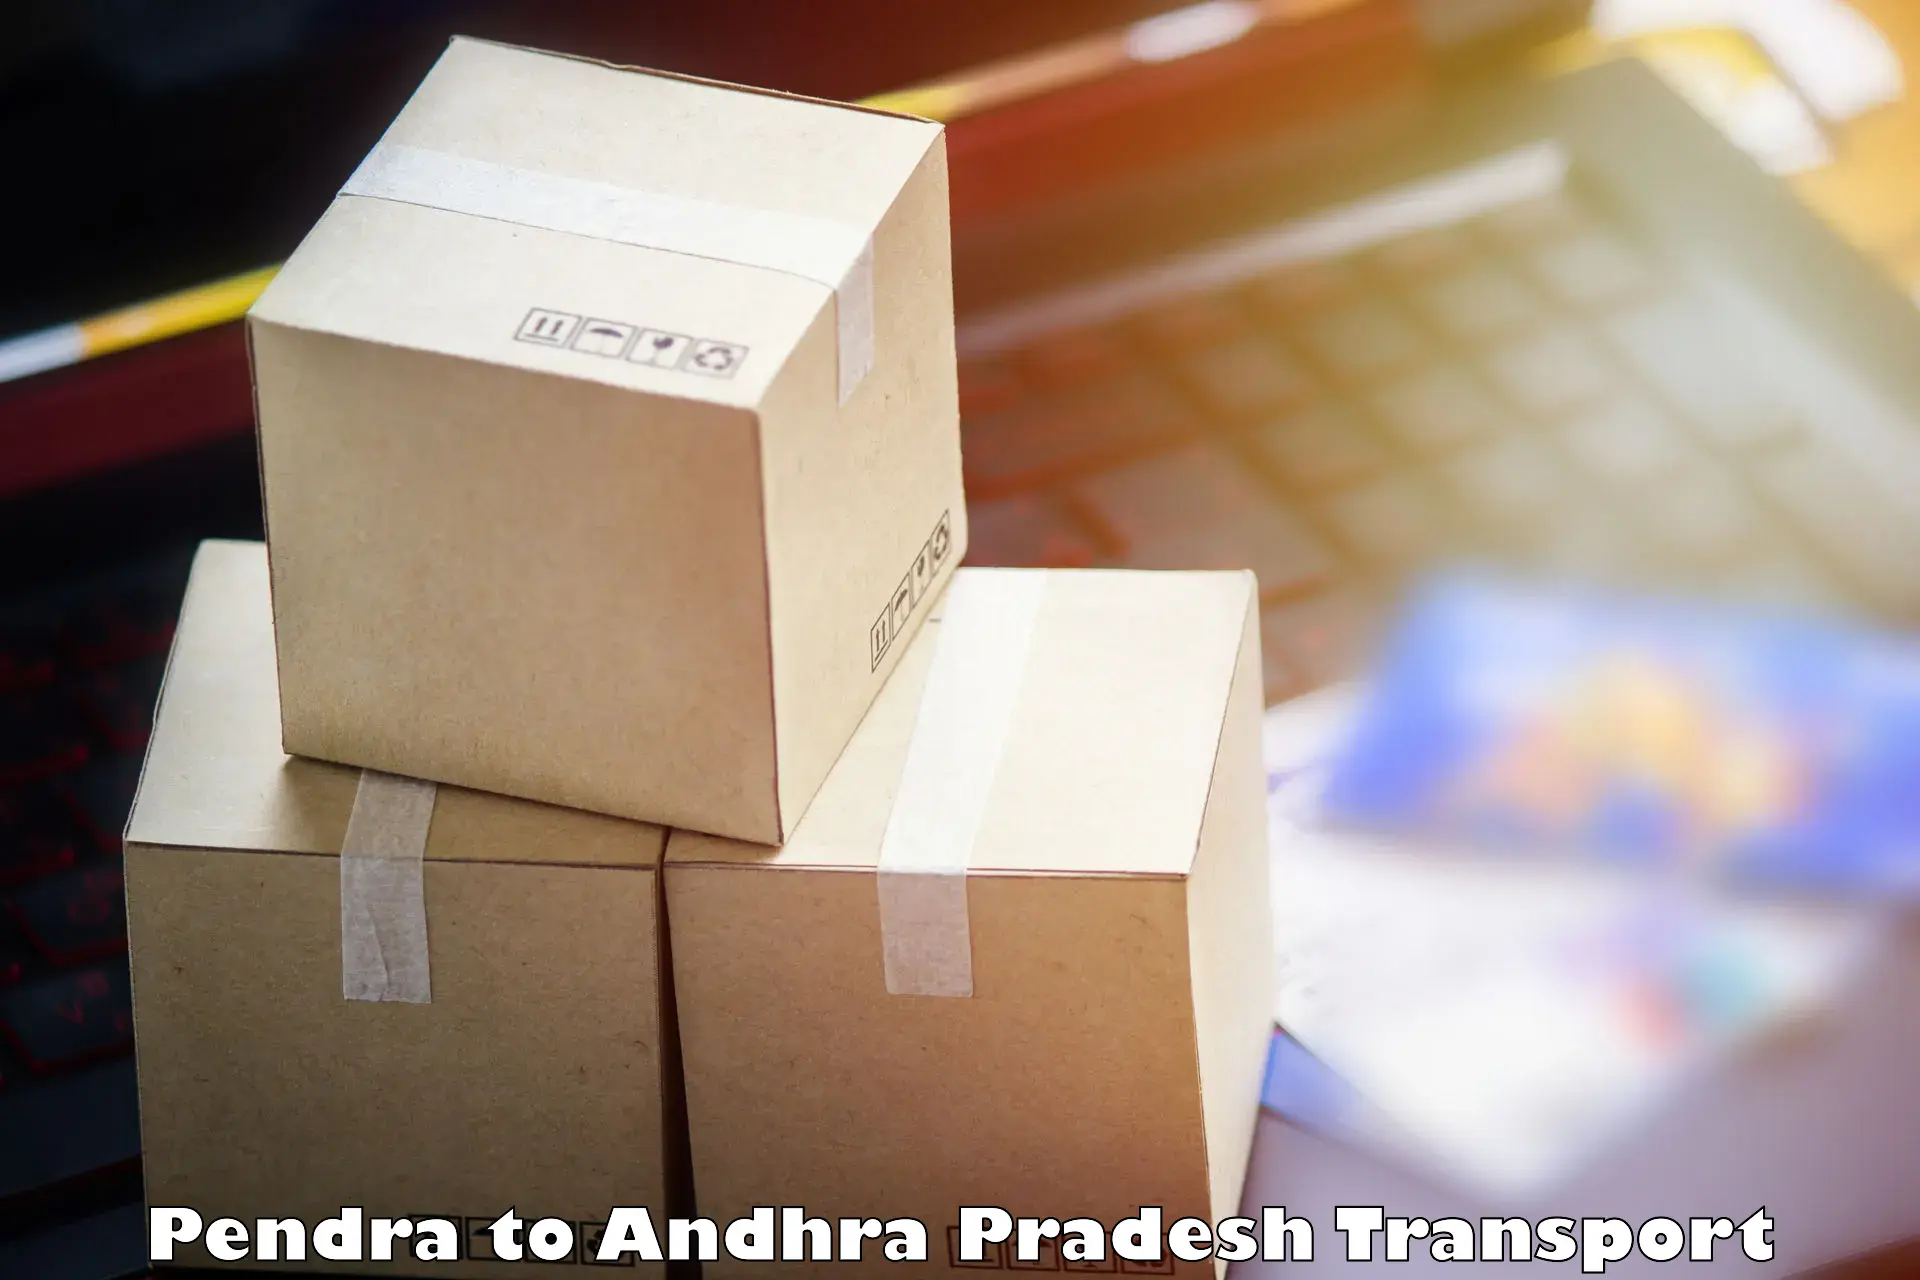 Goods delivery service Pendra to Mylavaram